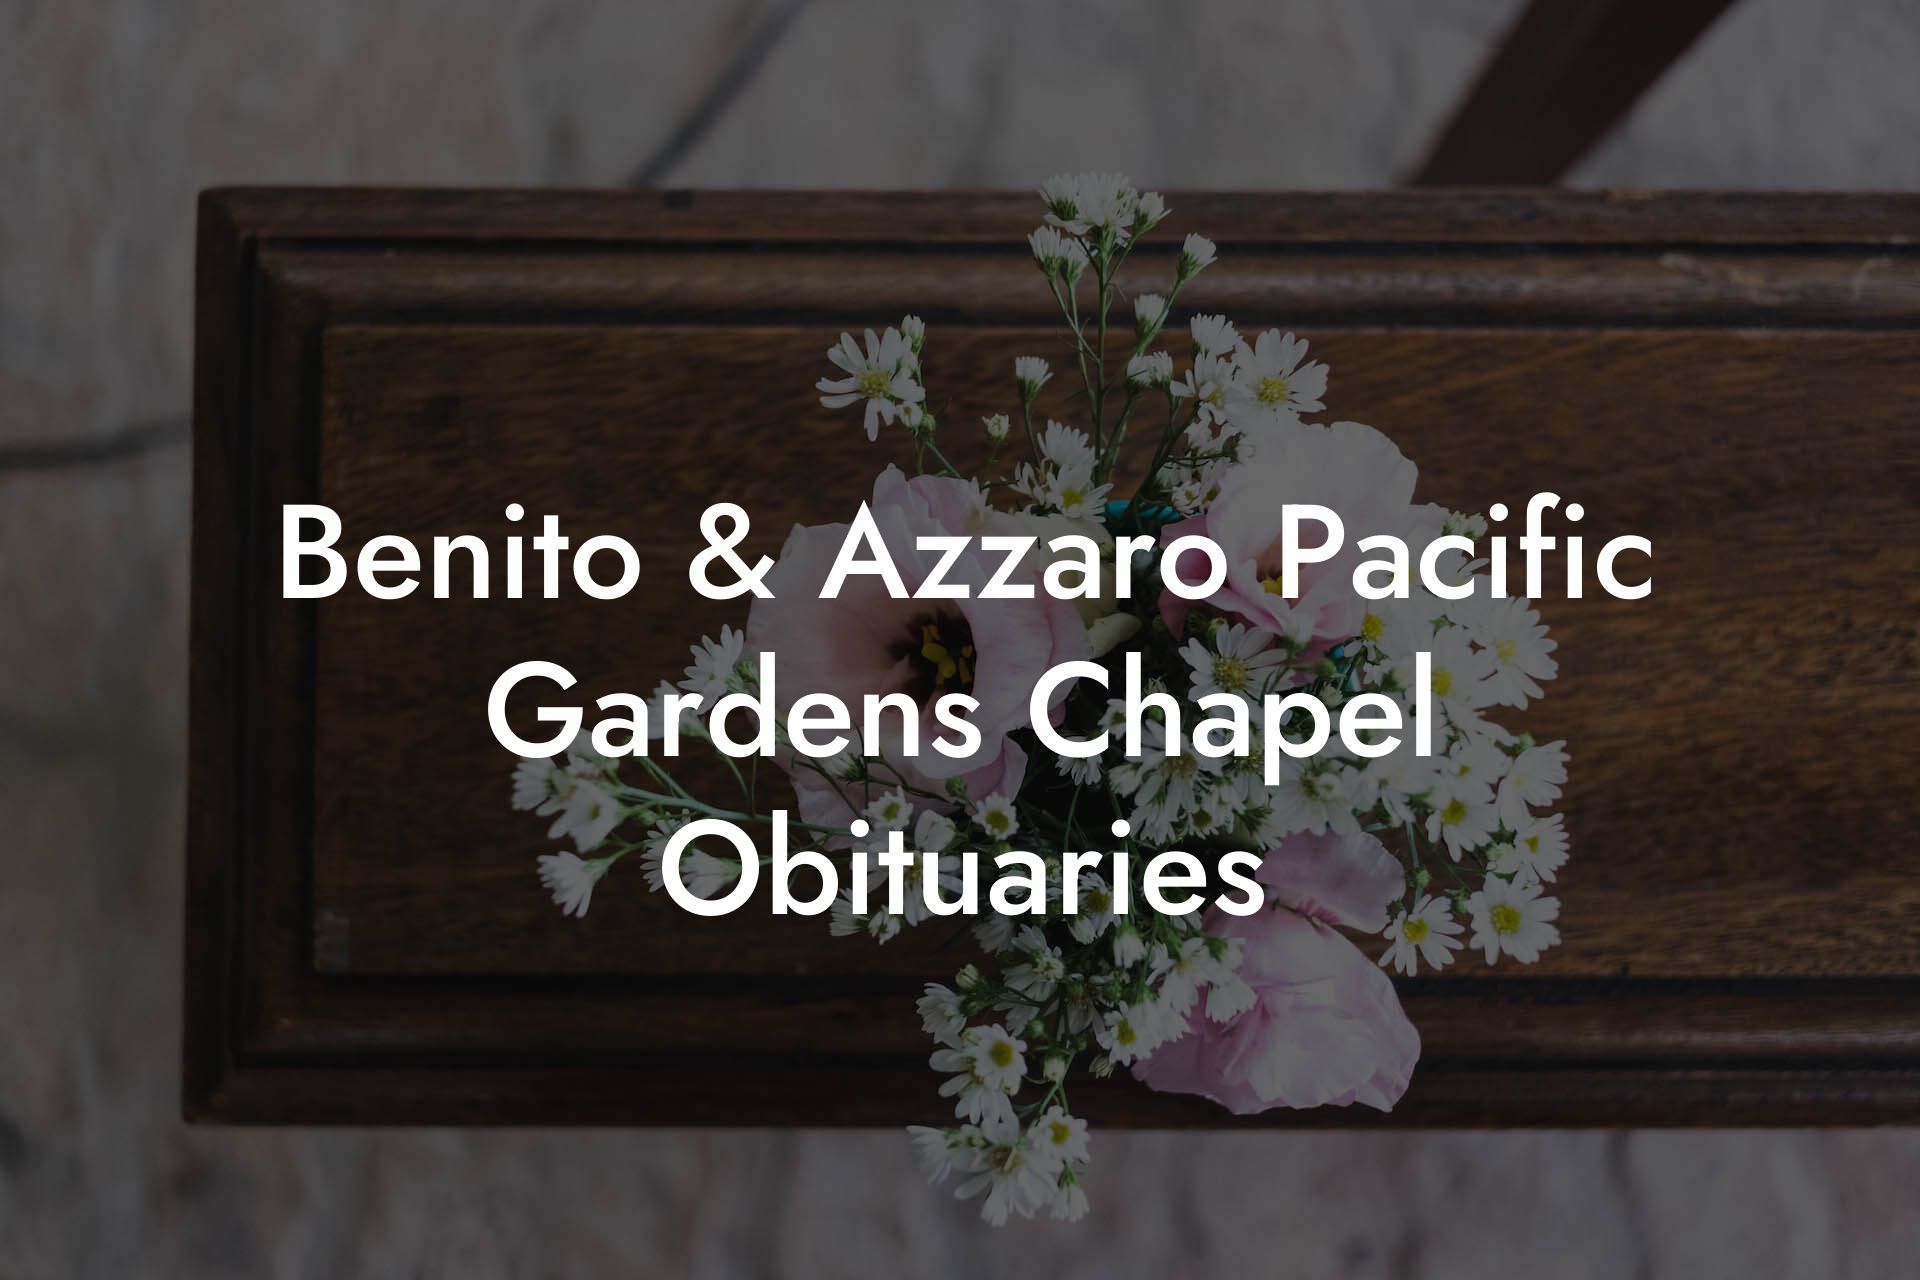 Benito & Azzaro Pacific Gardens Chapel Obituaries